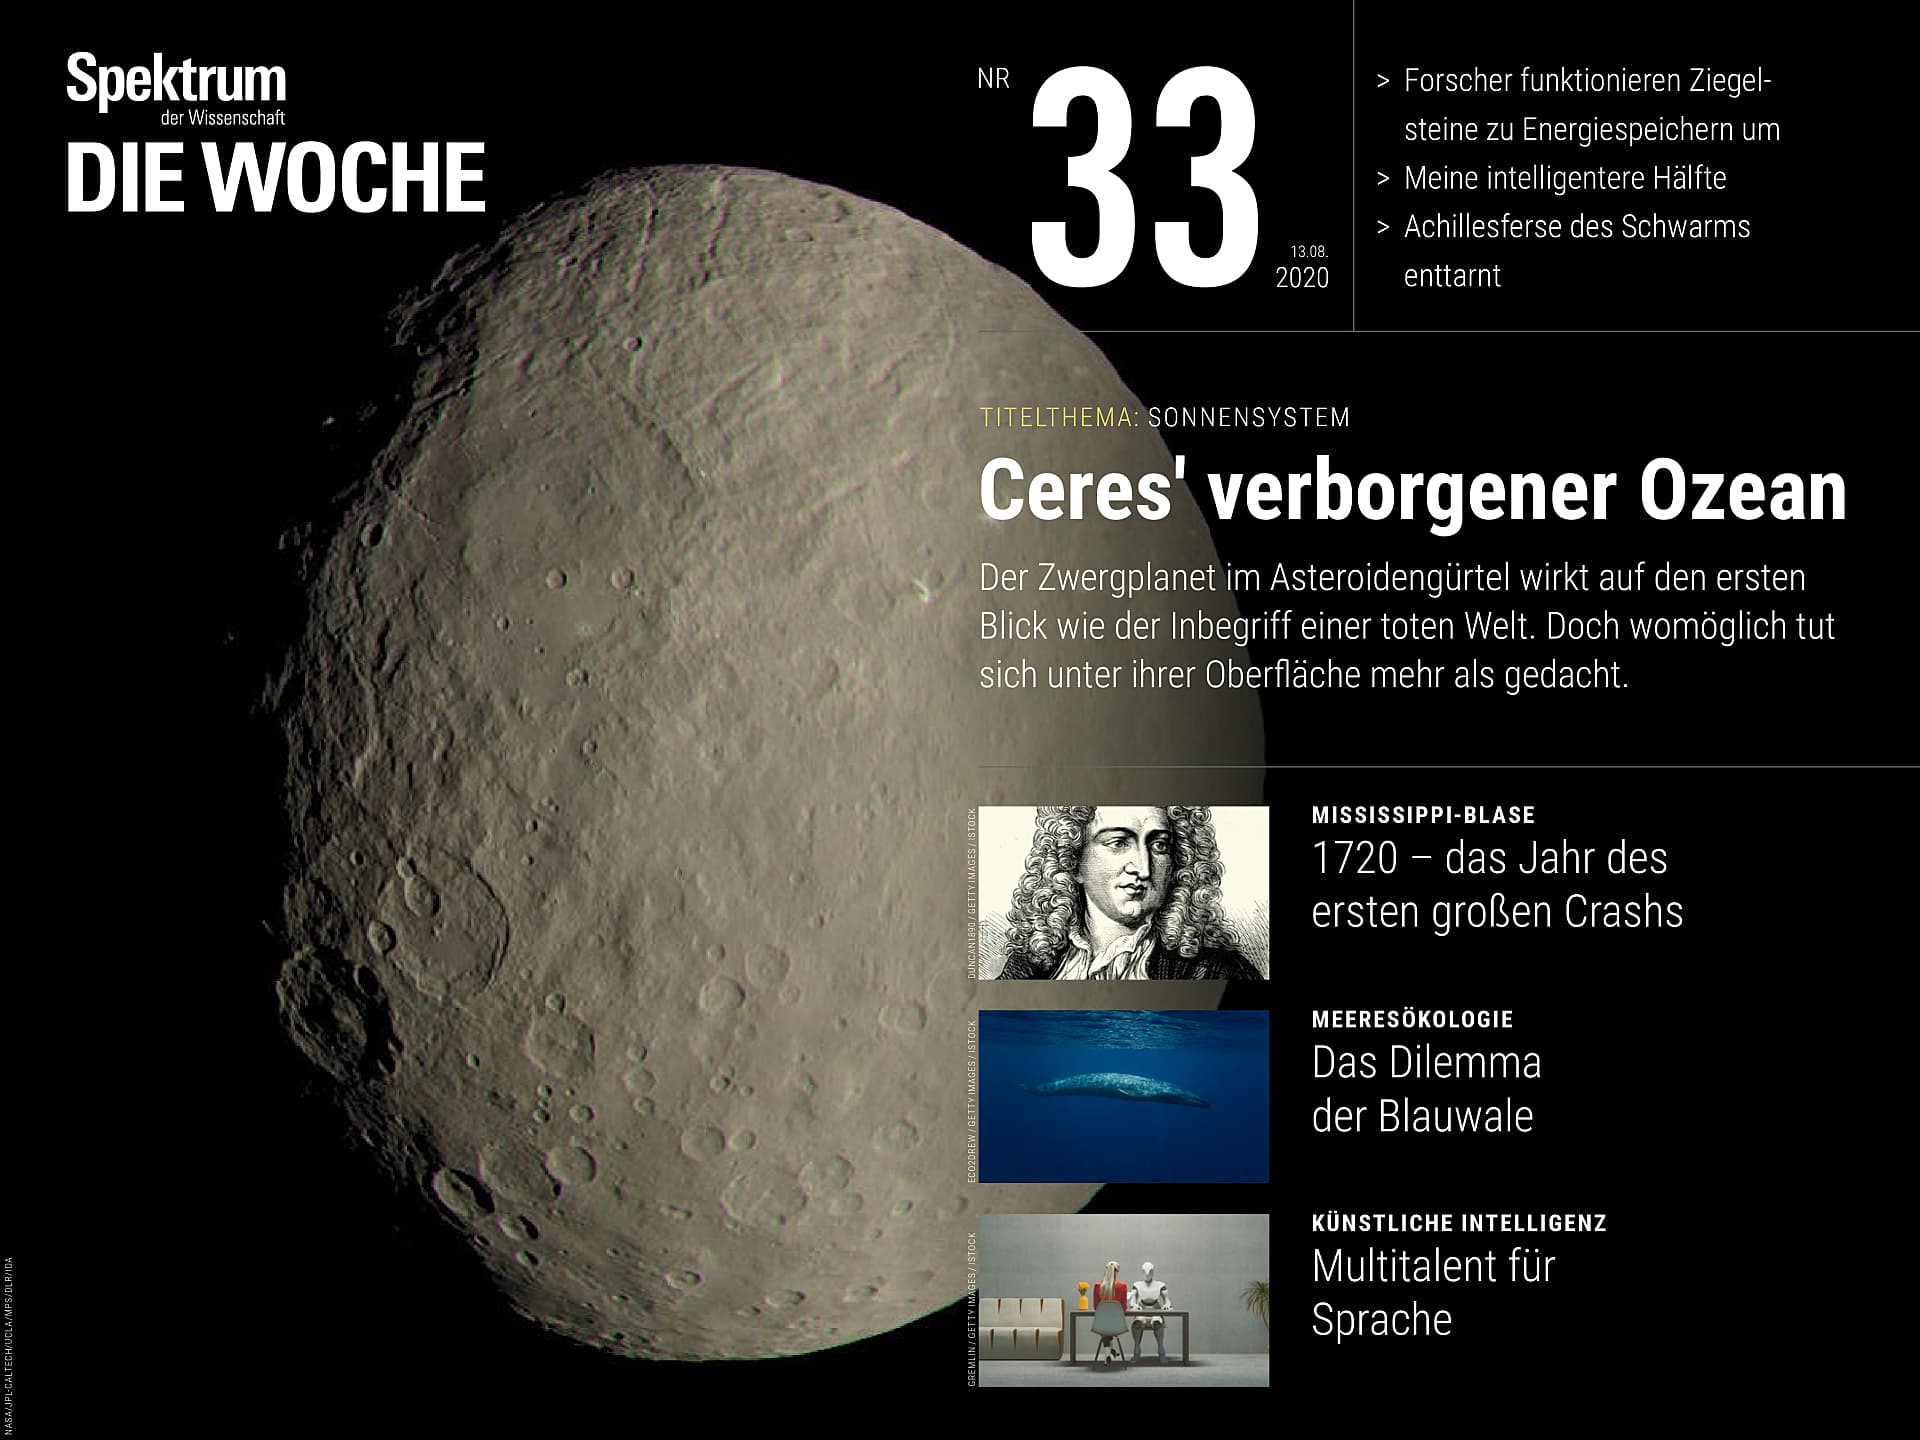 Ceres' verborgener Ozean